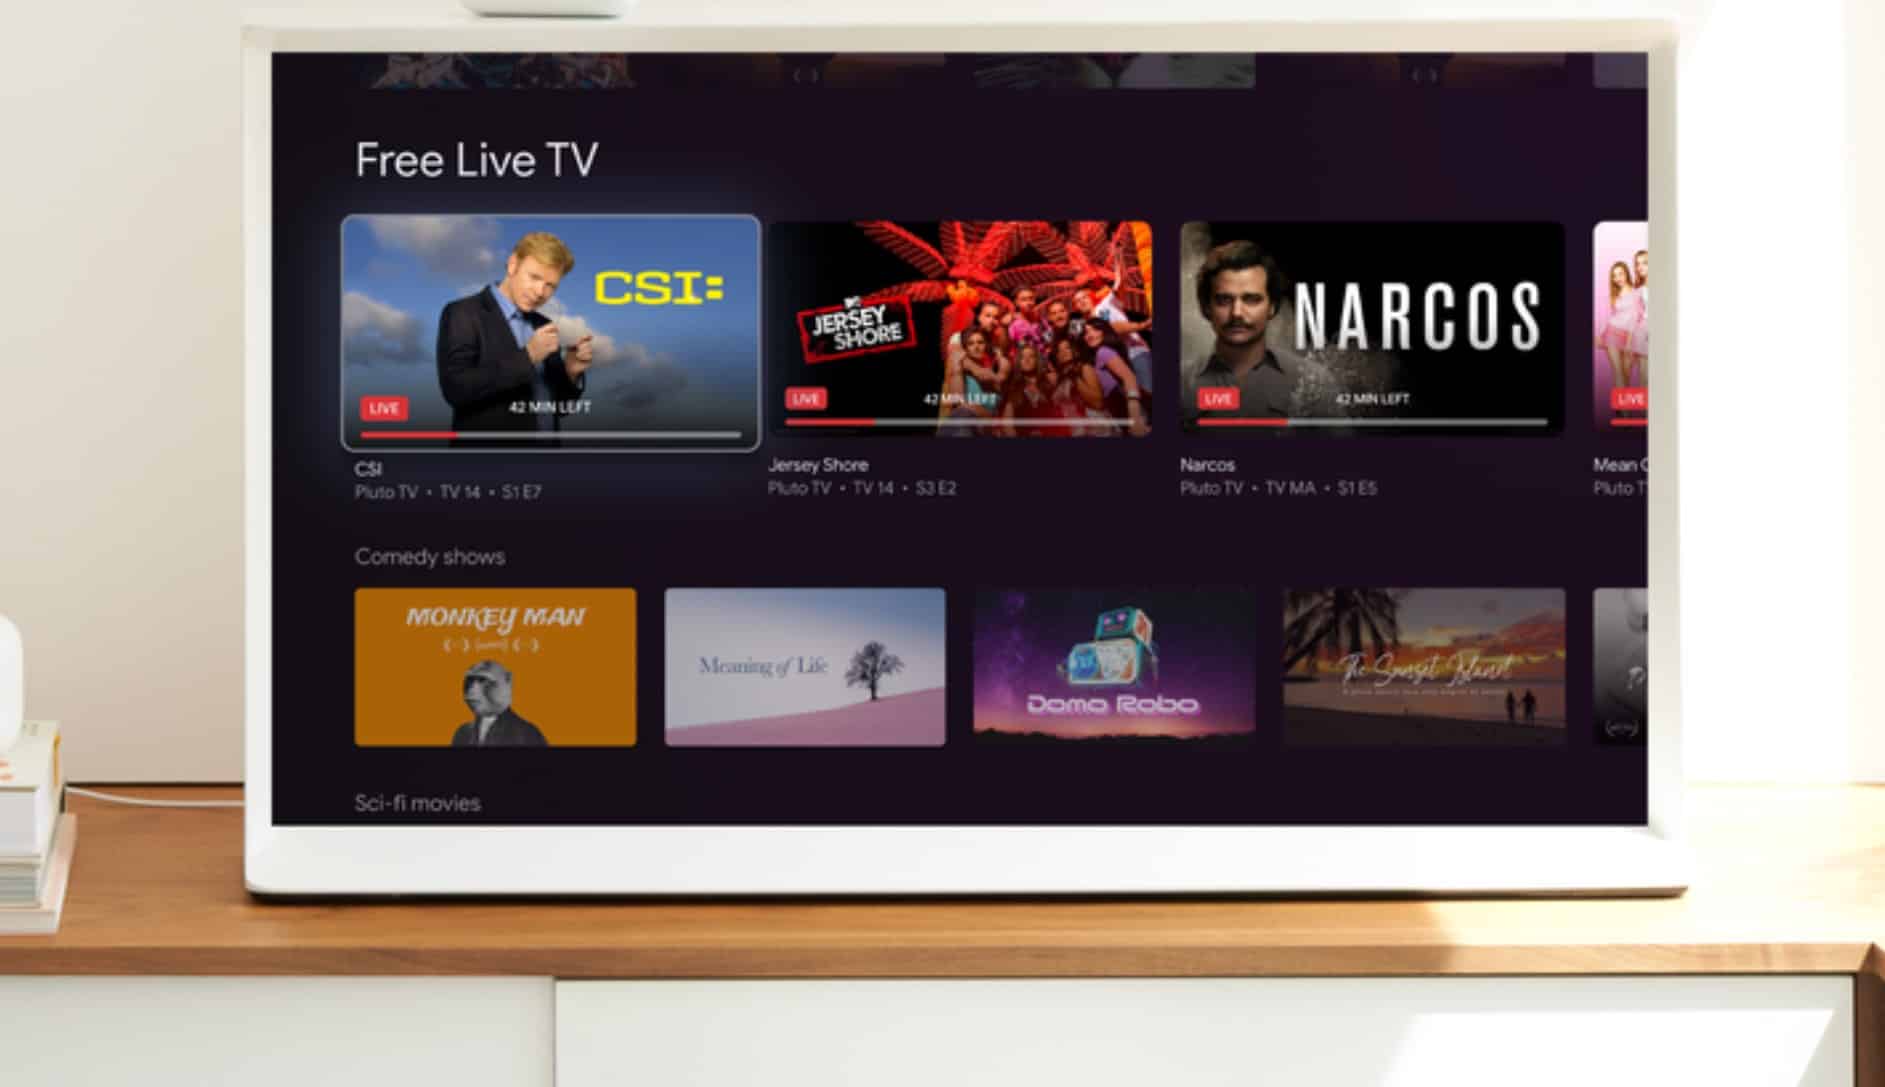 Google traz mais de 300 canais de TV ao vivo gratuitos para o Google TV